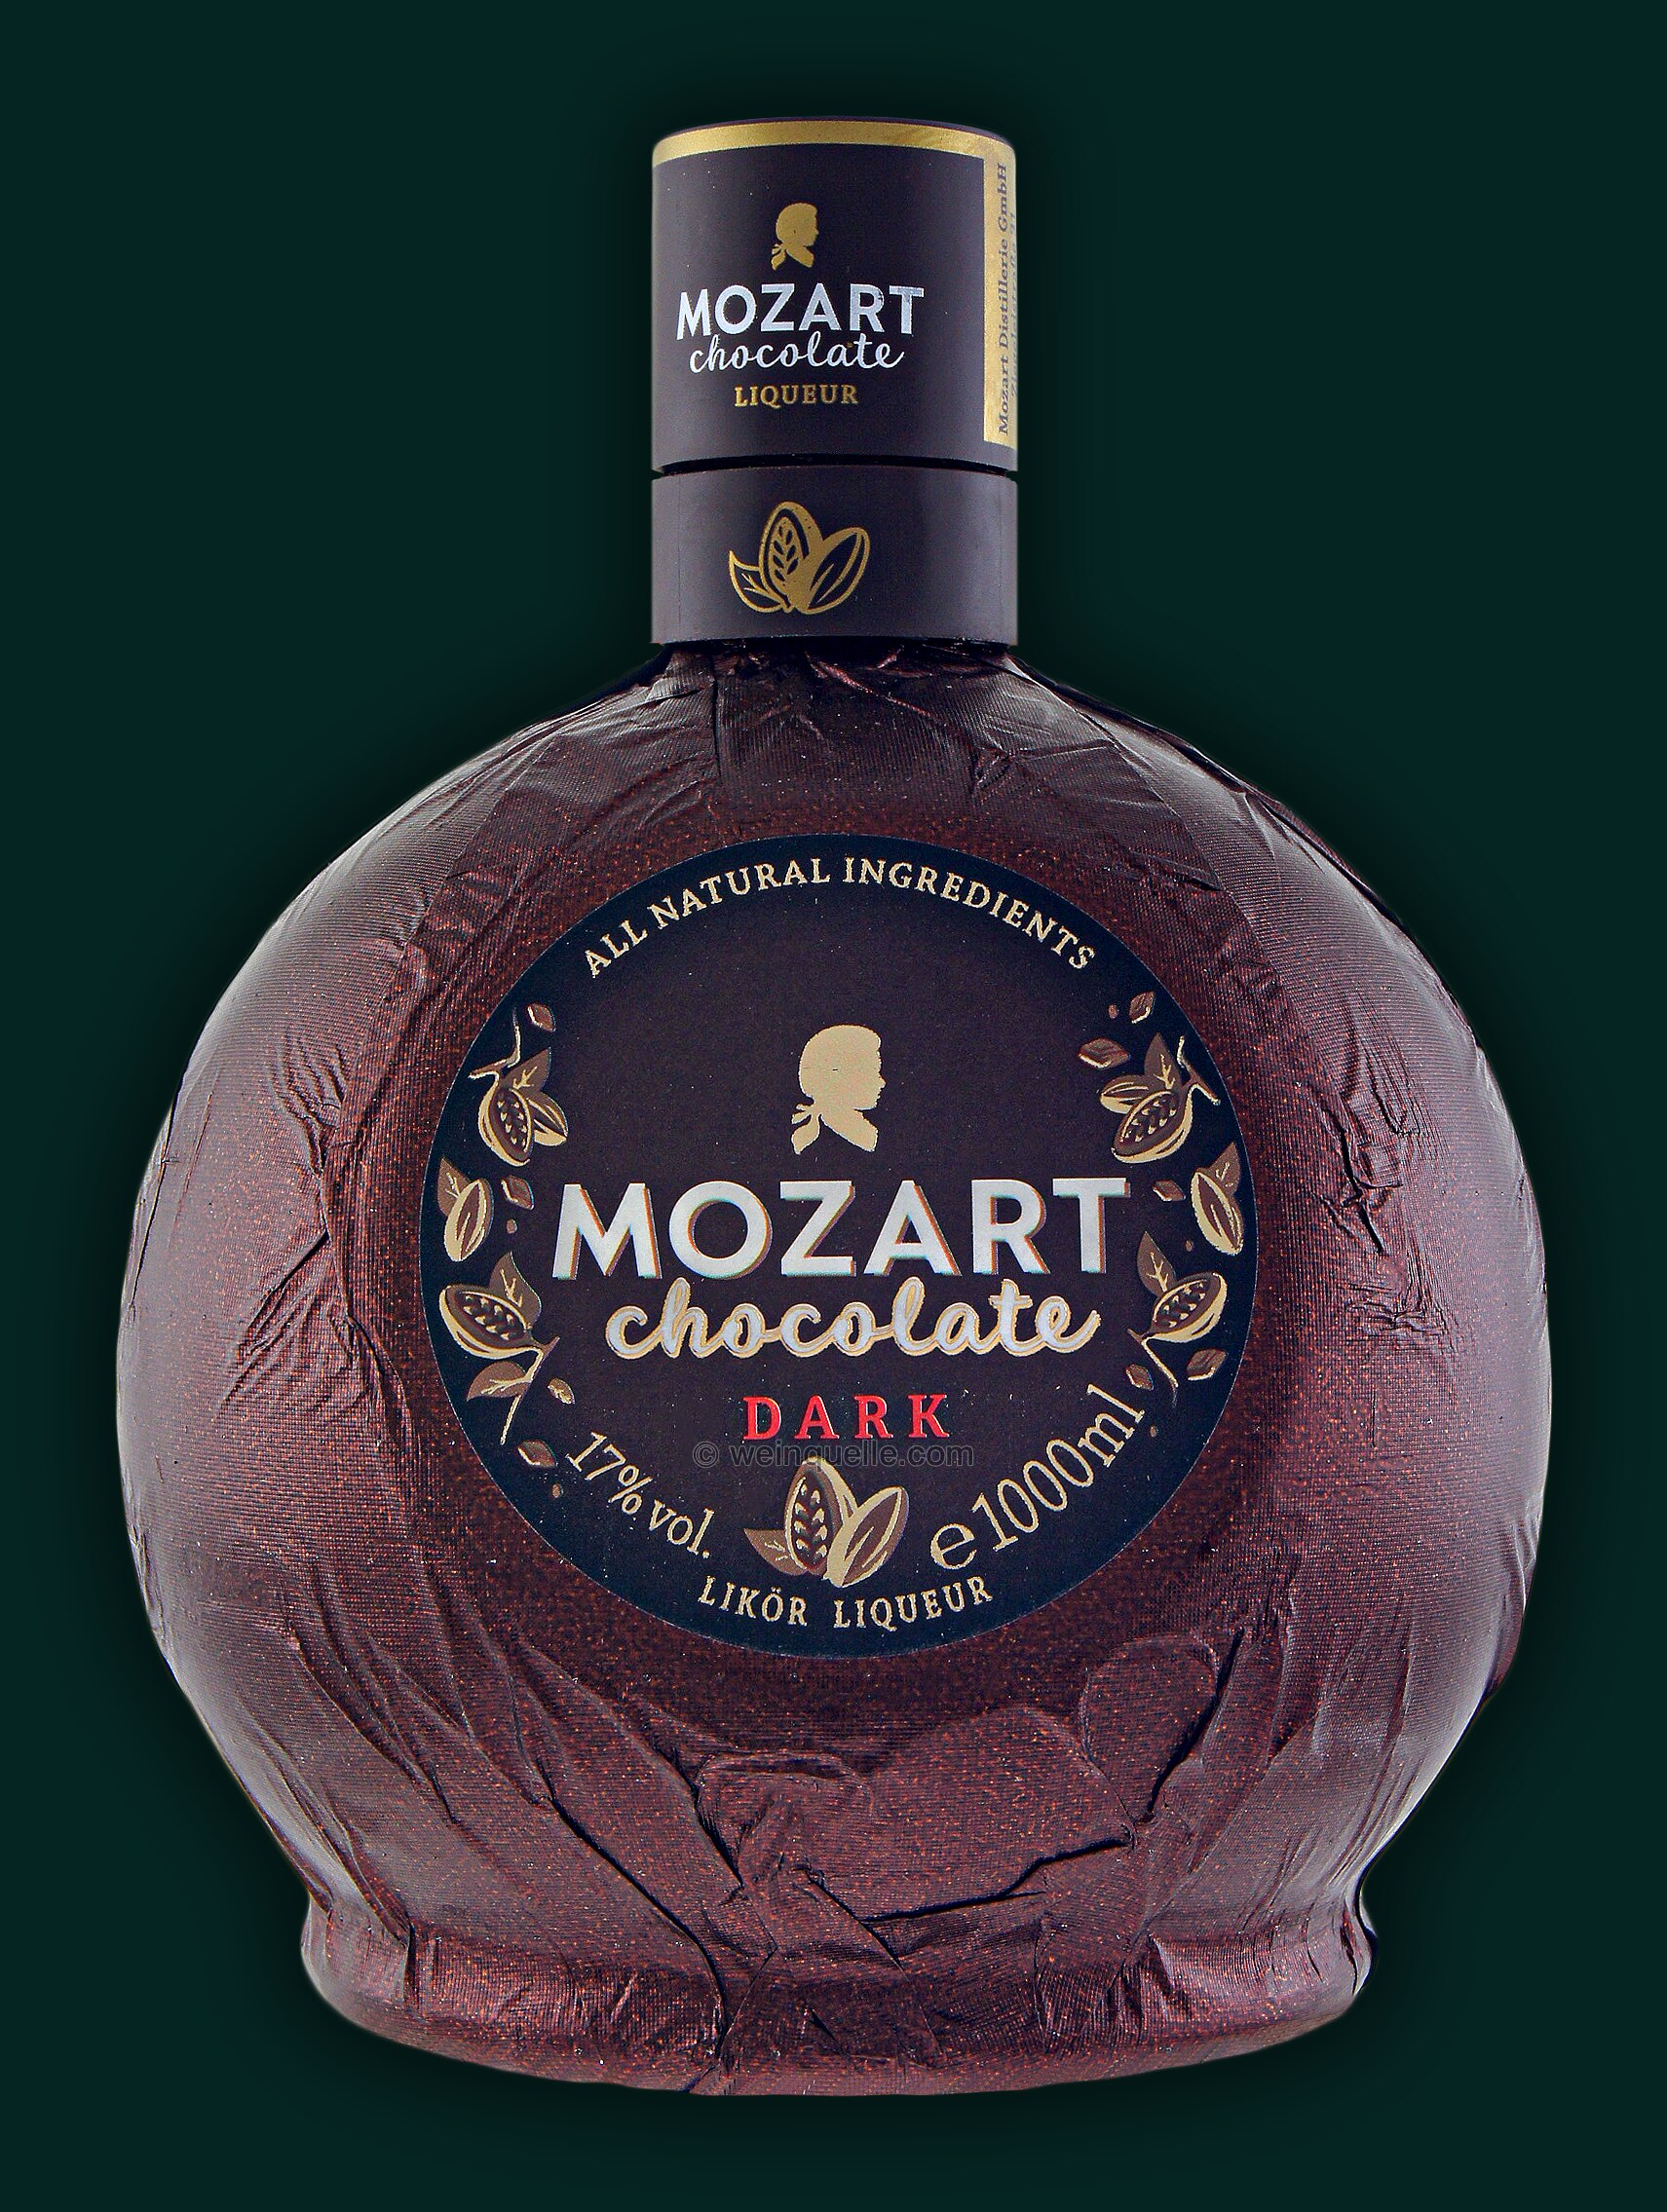 Mozart Dark Chocolate 1,0 22,50 Lühmann € - Liter, Weinquelle